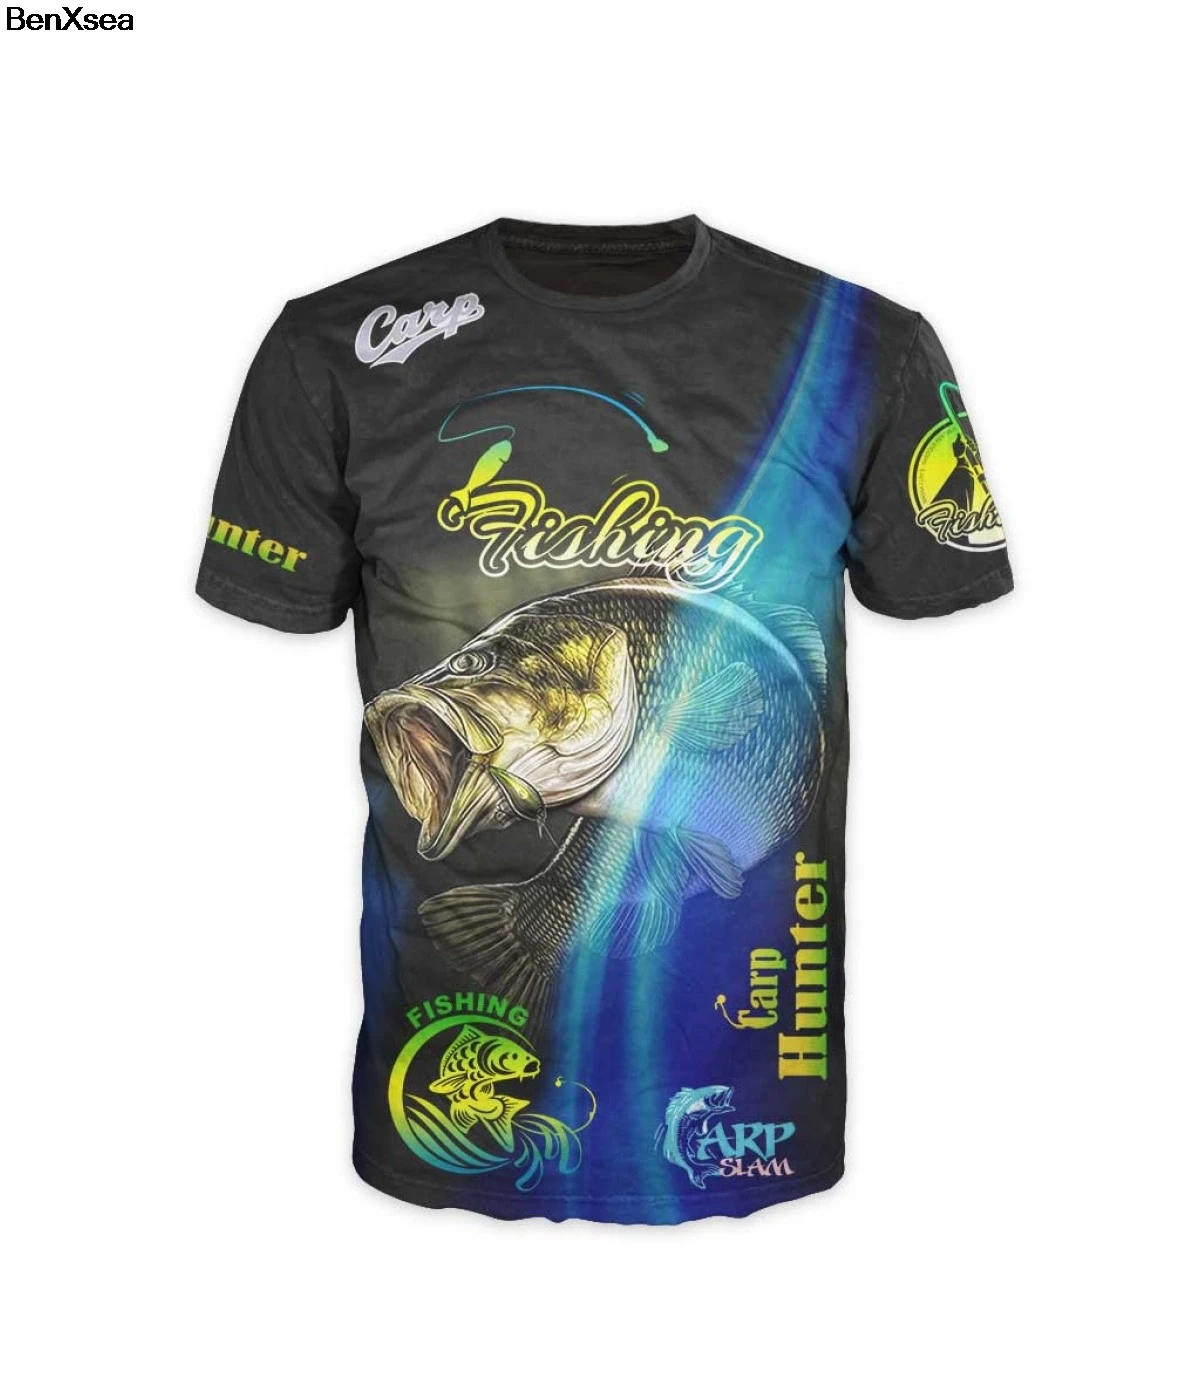 Модная стильная футболка с 3D принтом, крутая Мужская и женская футболка с 3D рыбкой, хобби, футболка с карпом, большие размеры, хип-хоп - Цвет: Тёмно-синий